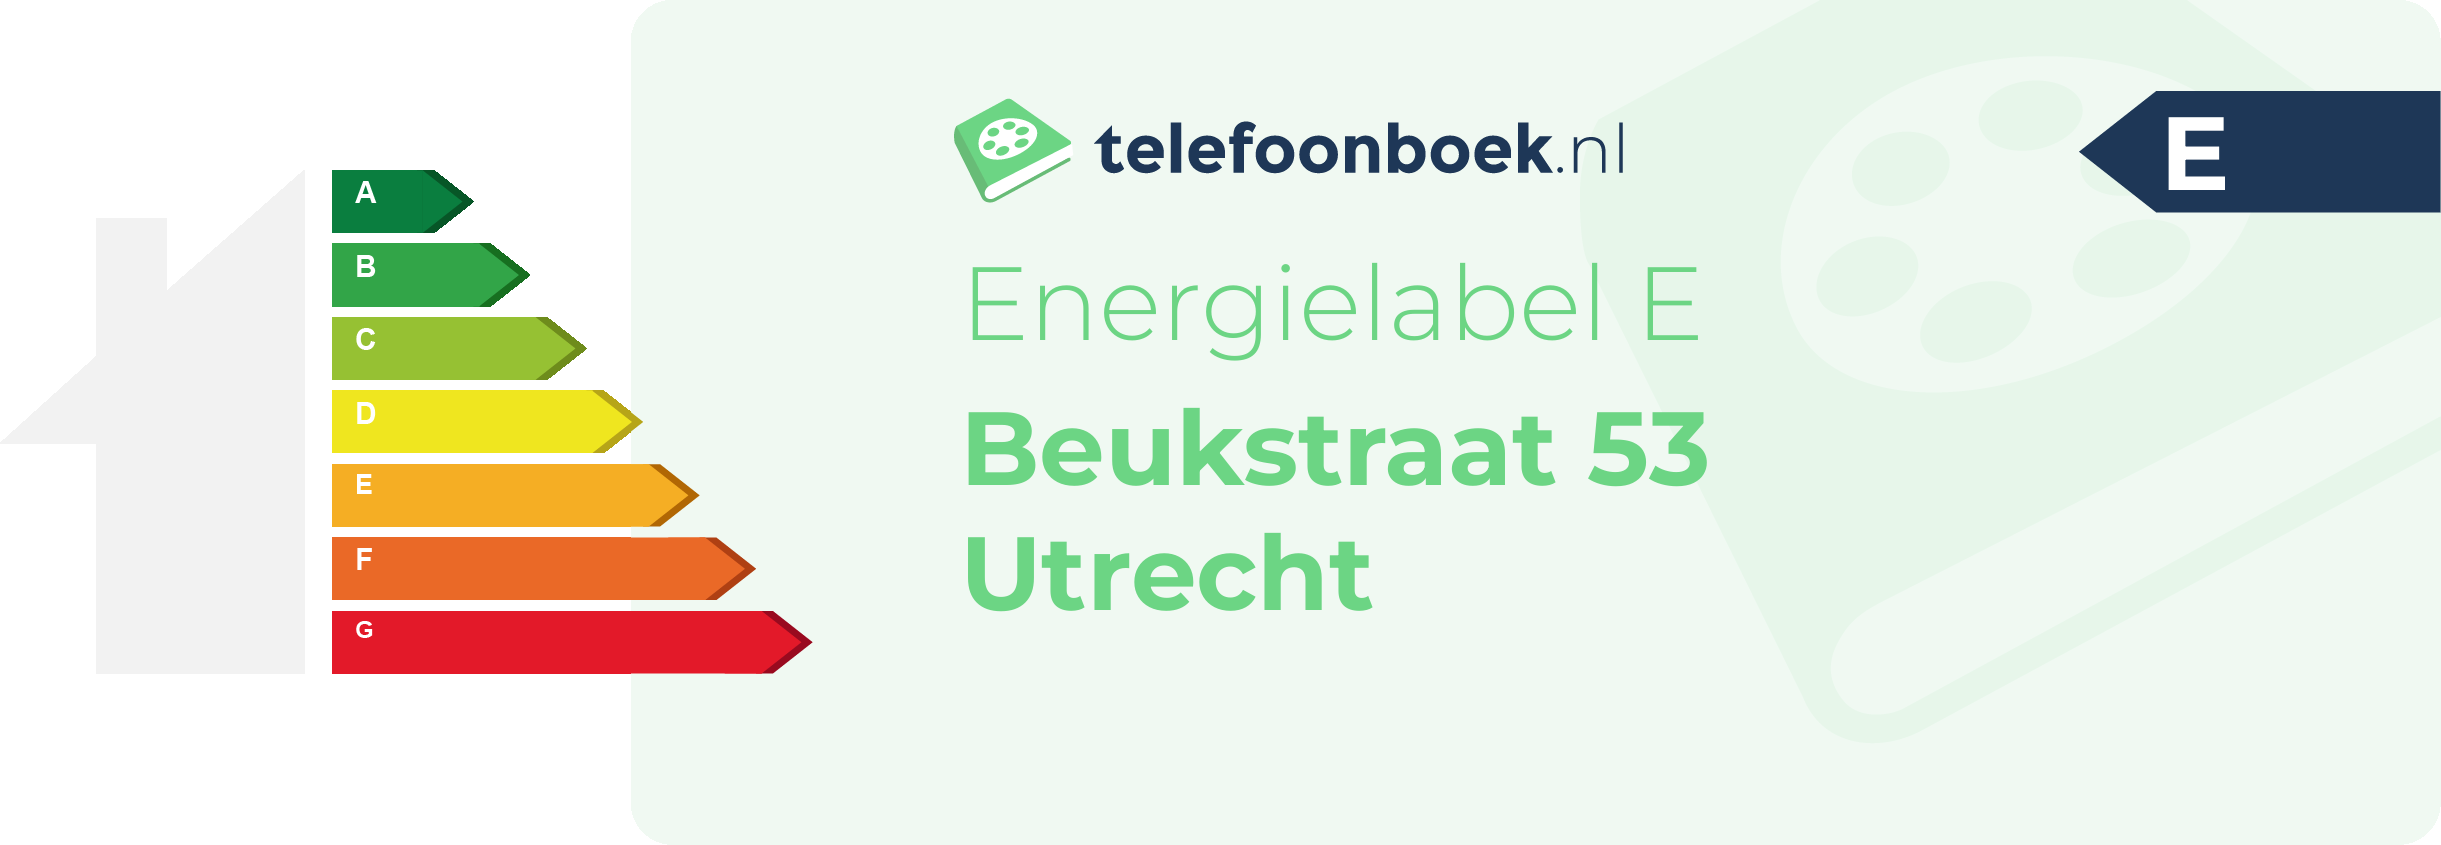 Energielabel Beukstraat 53 Utrecht